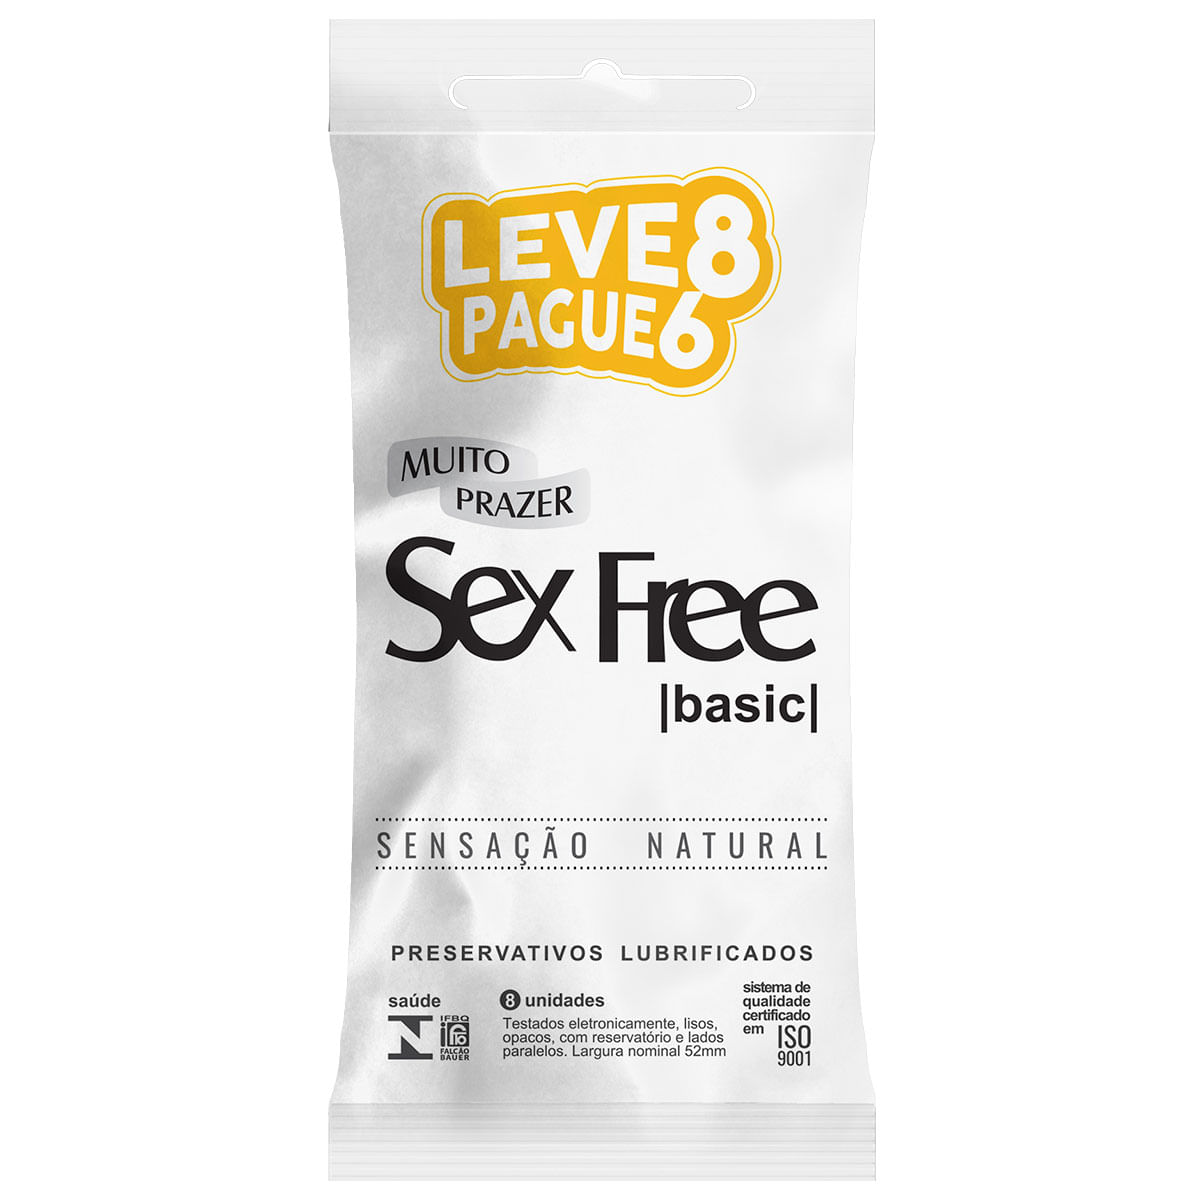 Preservativos Lubrificados Basic Sensação Natural  Leve 8 Pague 6 Sex Free